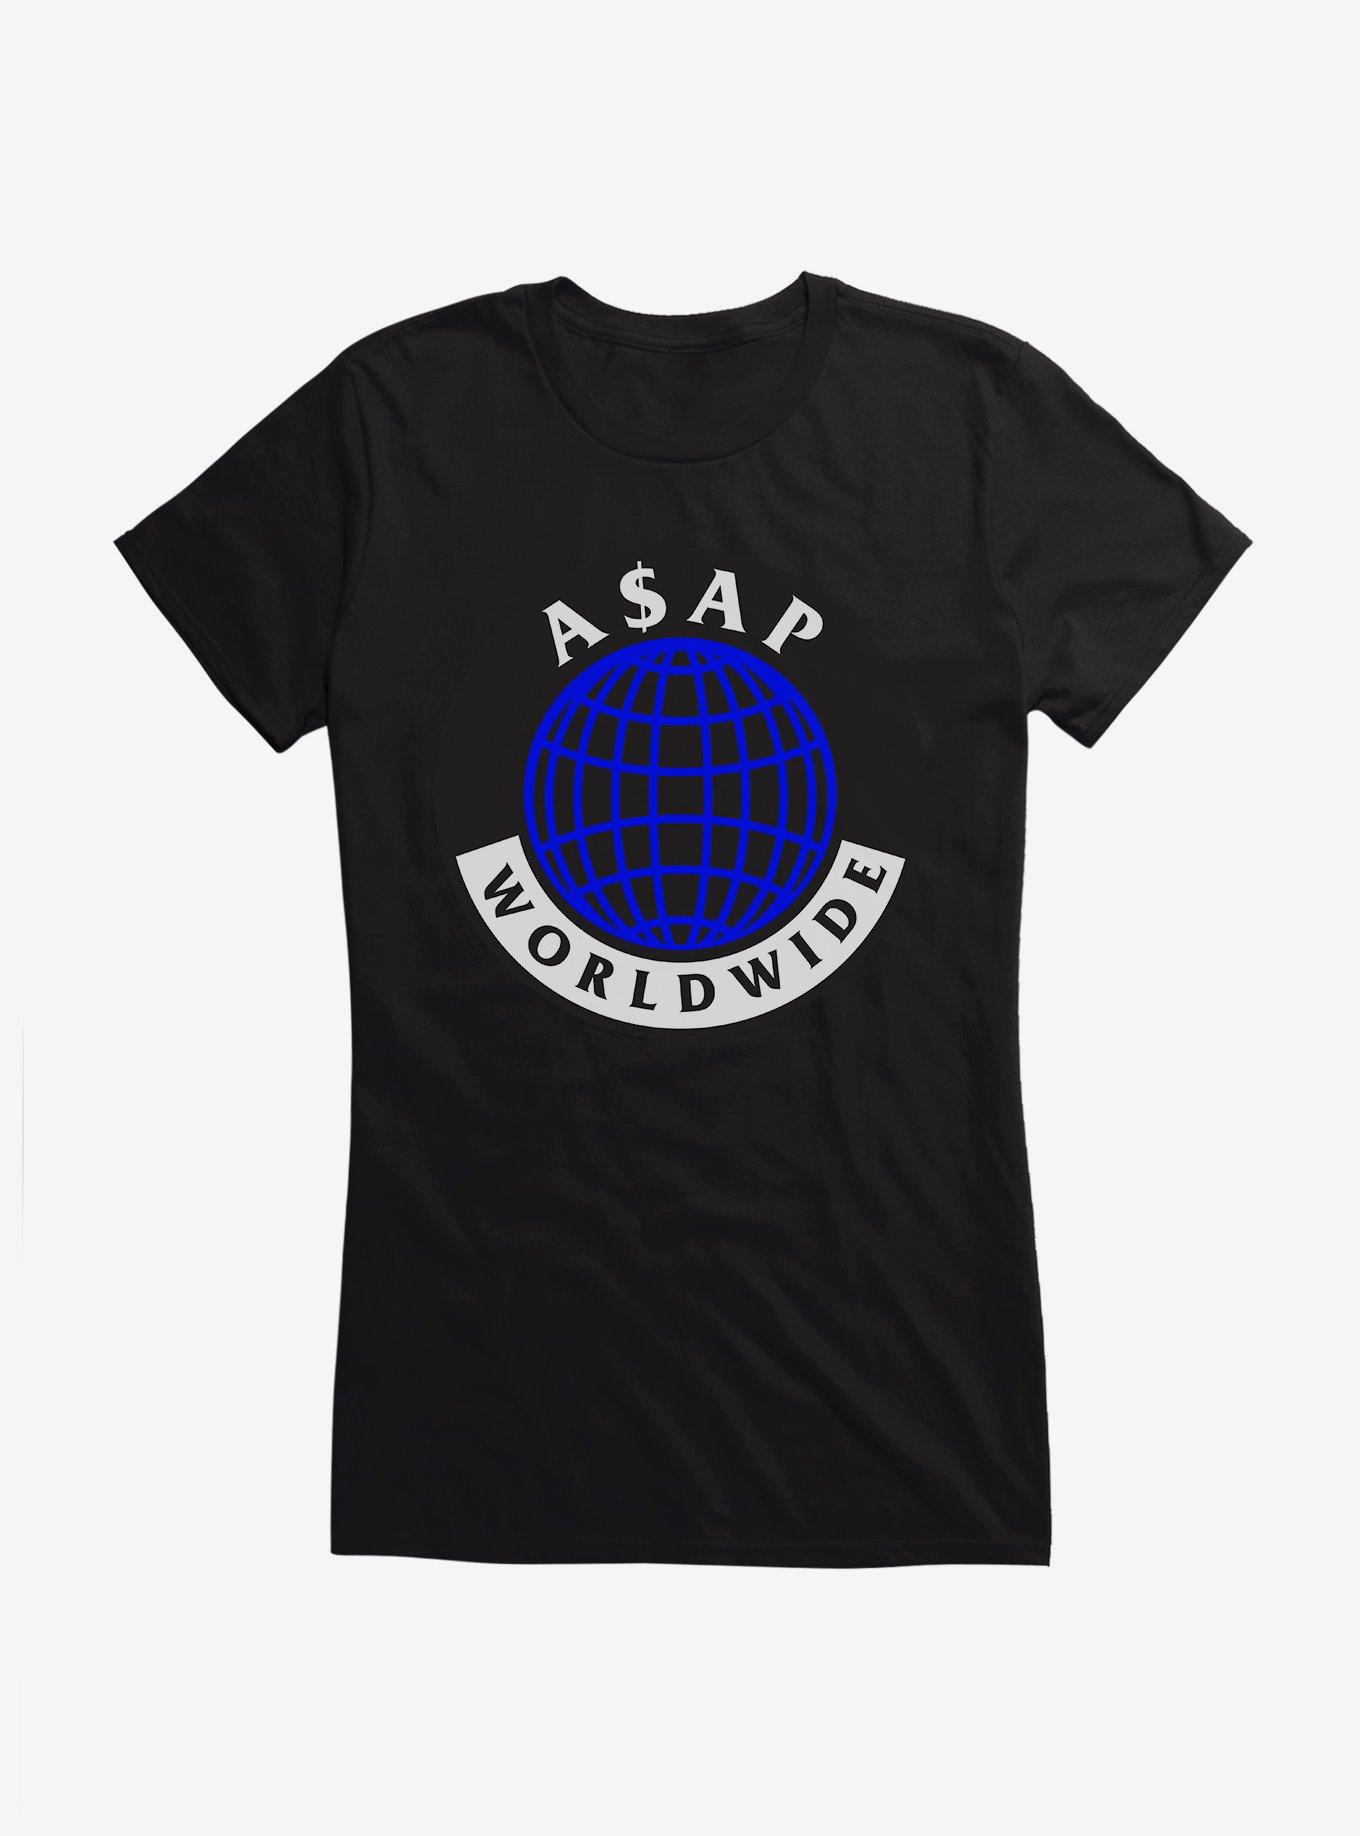 A$AP Ferg Worldwide Logo Girls T-Shirt